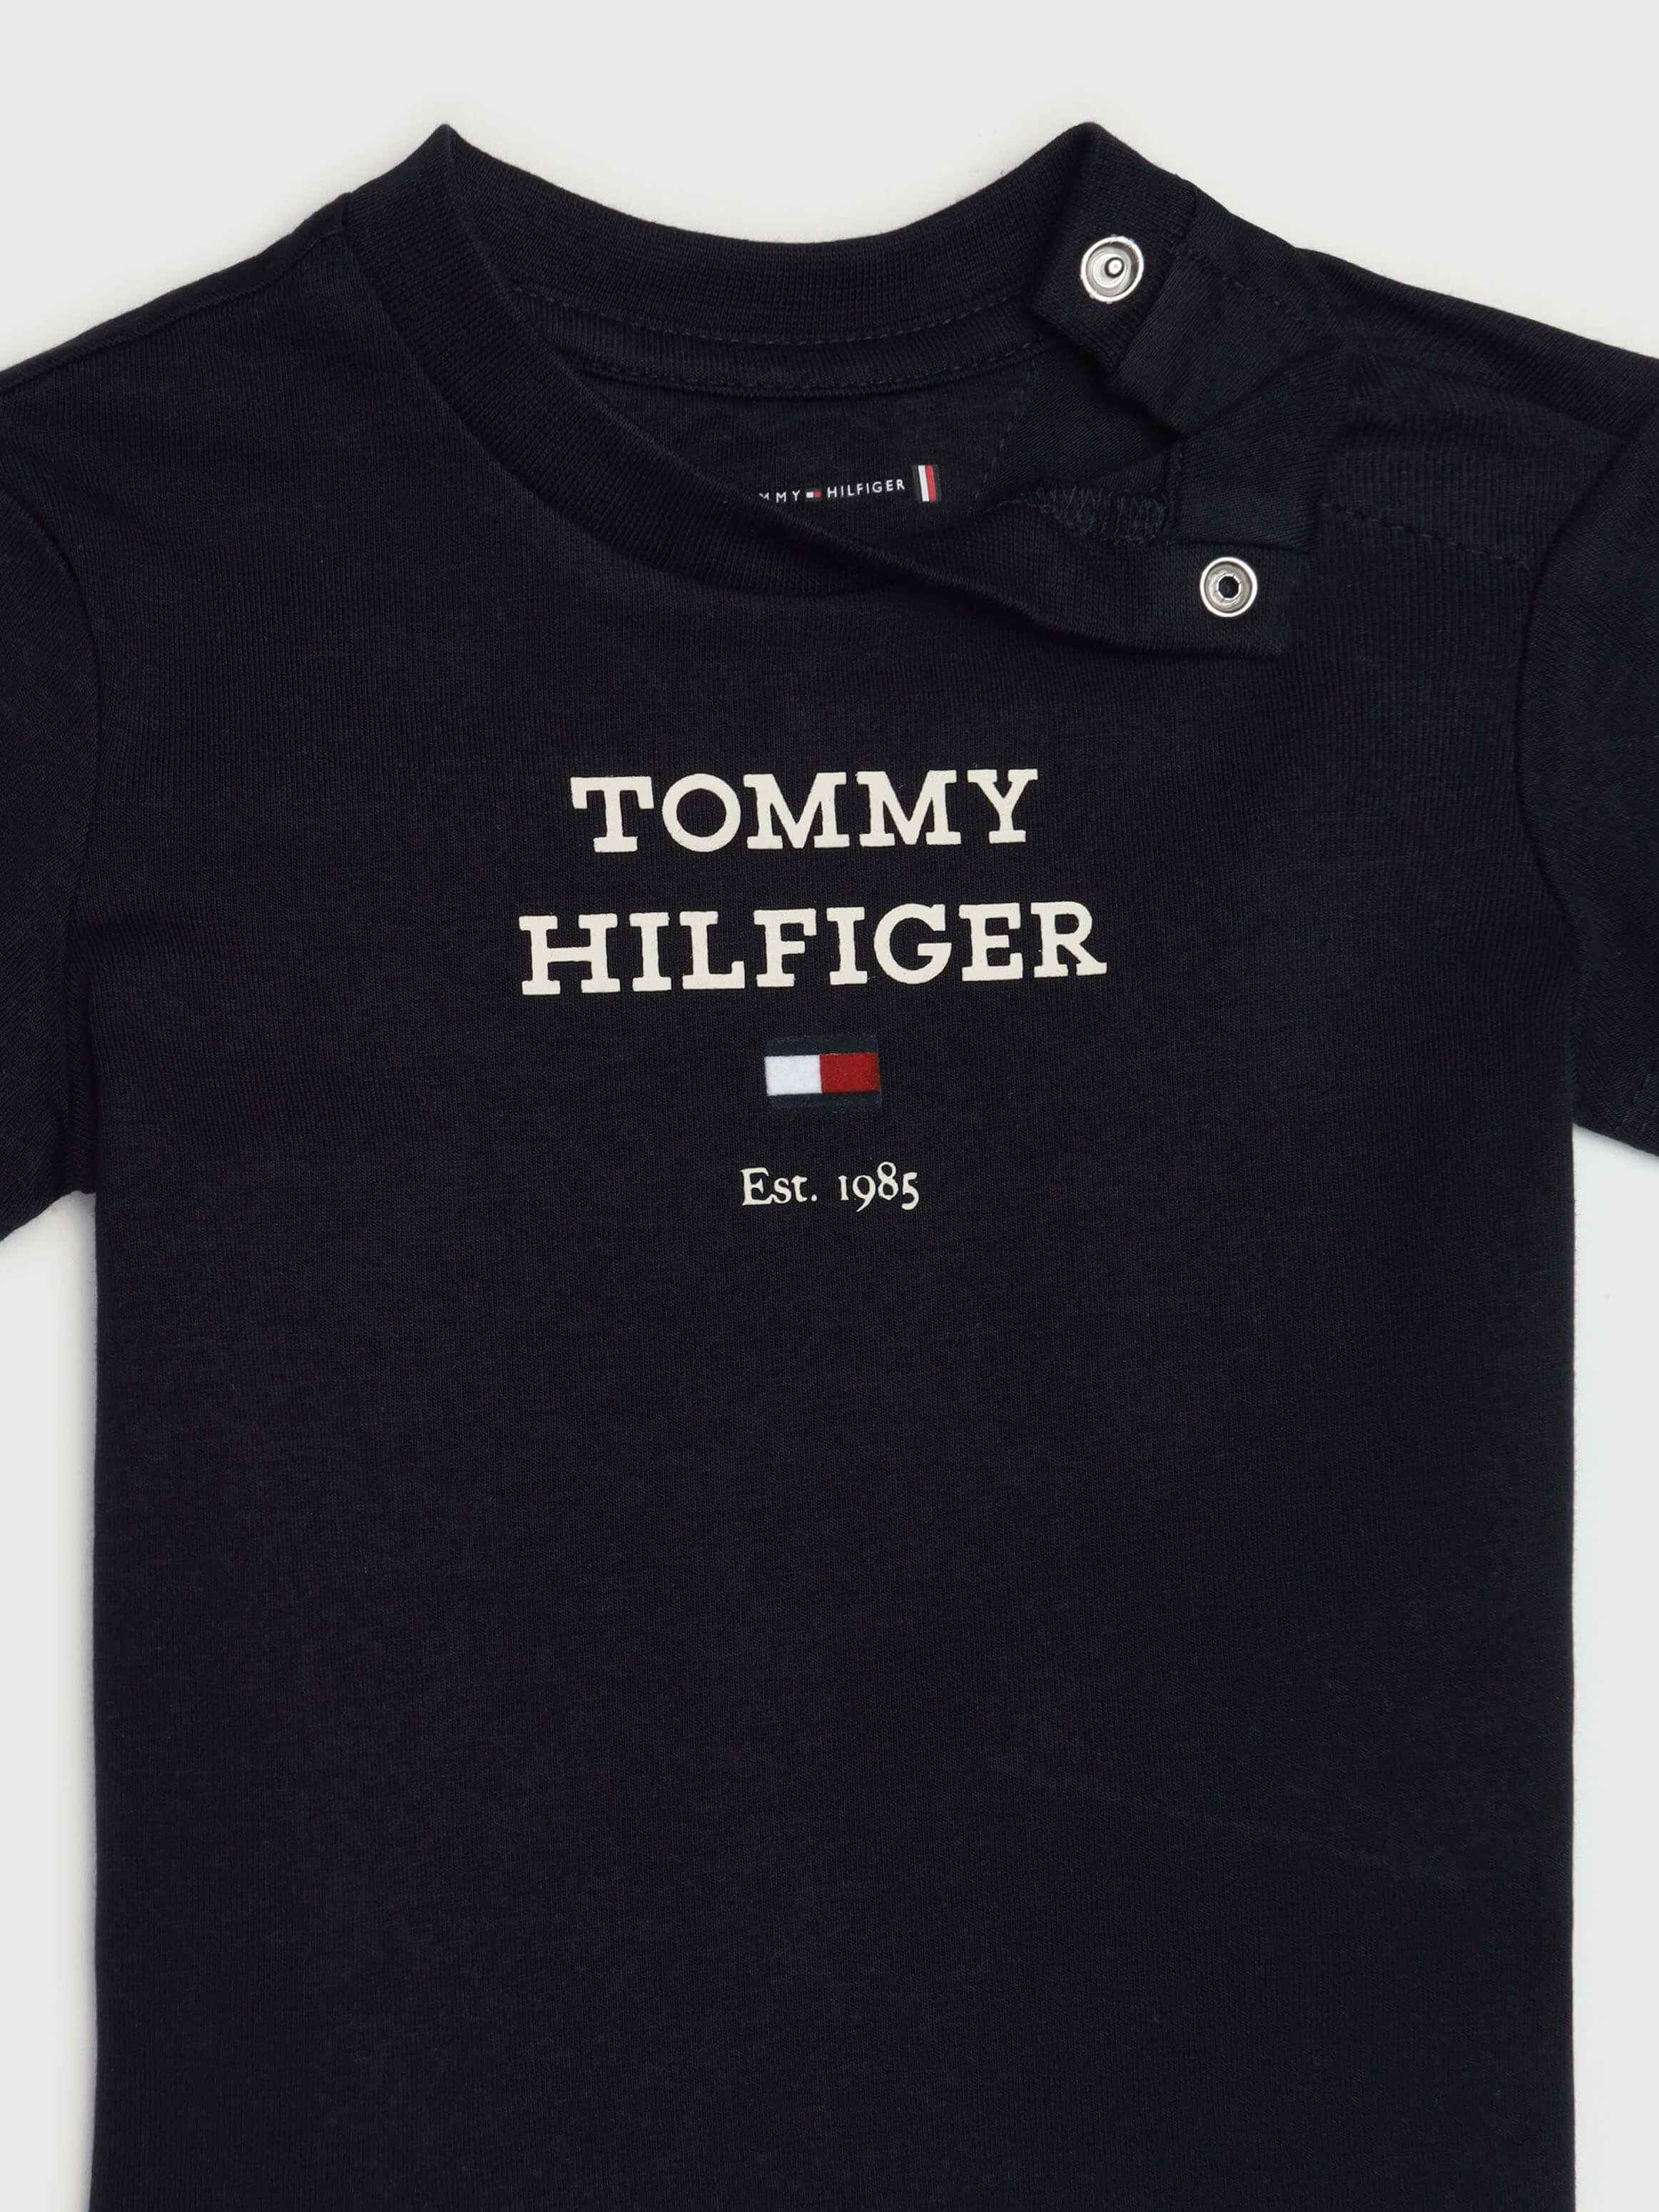 Playera con logo bordado de bebé Tommy Hilfiger